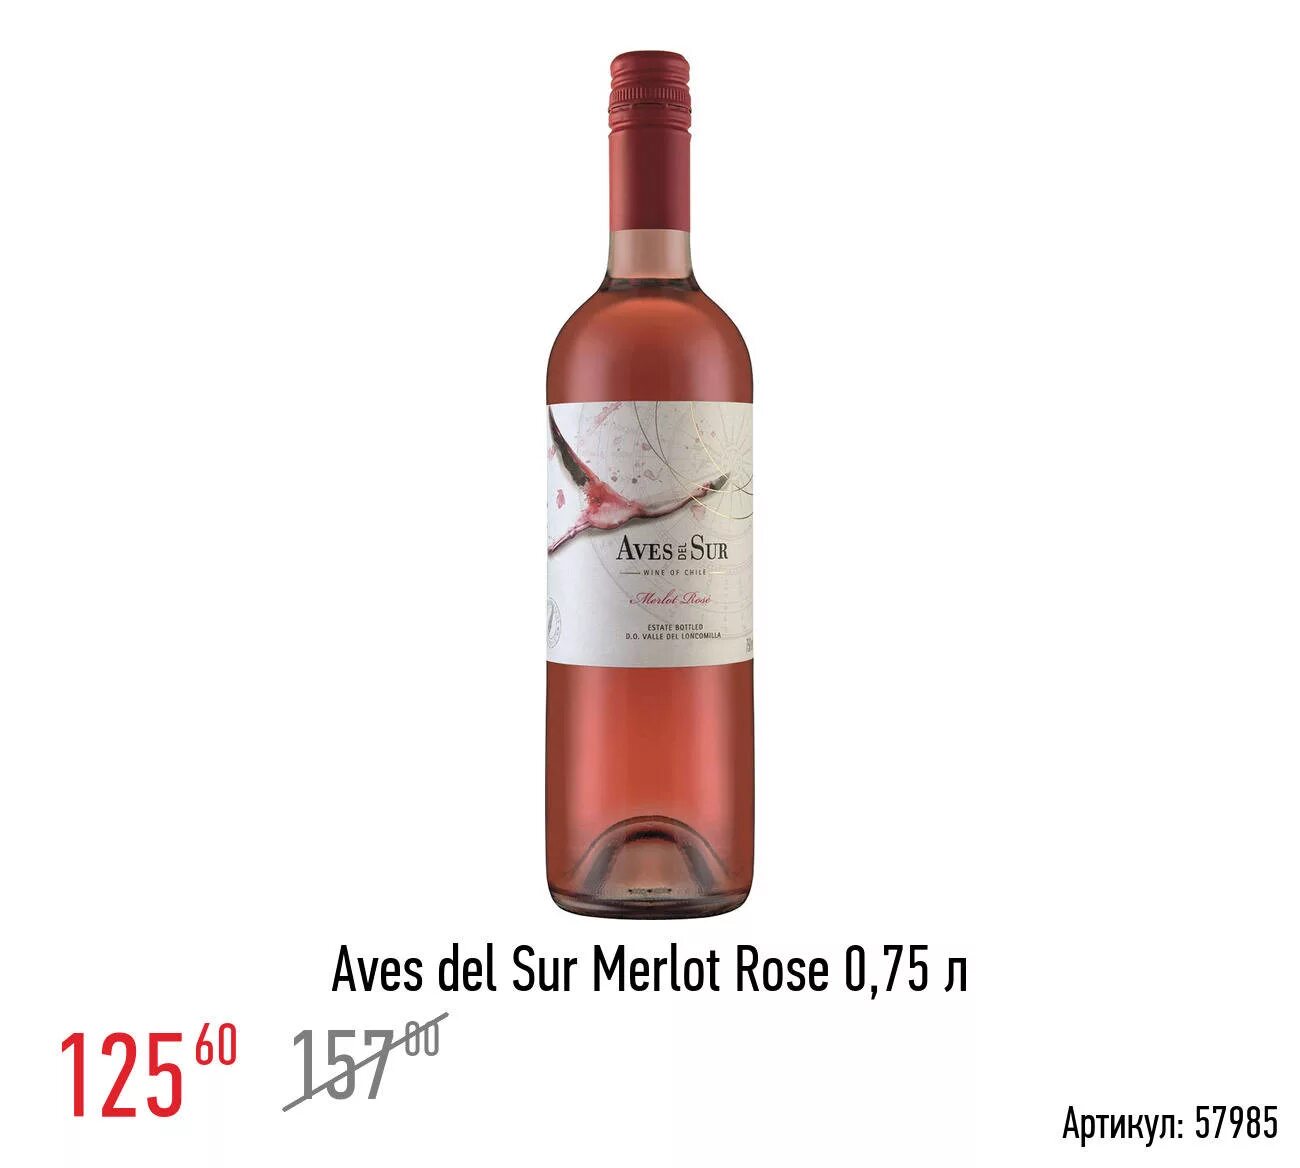 Вино Мерло Розе АВЕС дель сур розовое. Aves del sur вино. Вино Aurvin Merlot Rose. Вино АВЕС дель сур 0.75л Мерло Розе роз. П/сух. 10.10.2022 3496067 Vinacarta 94700 7804310551930. Мерло розовое полусухое